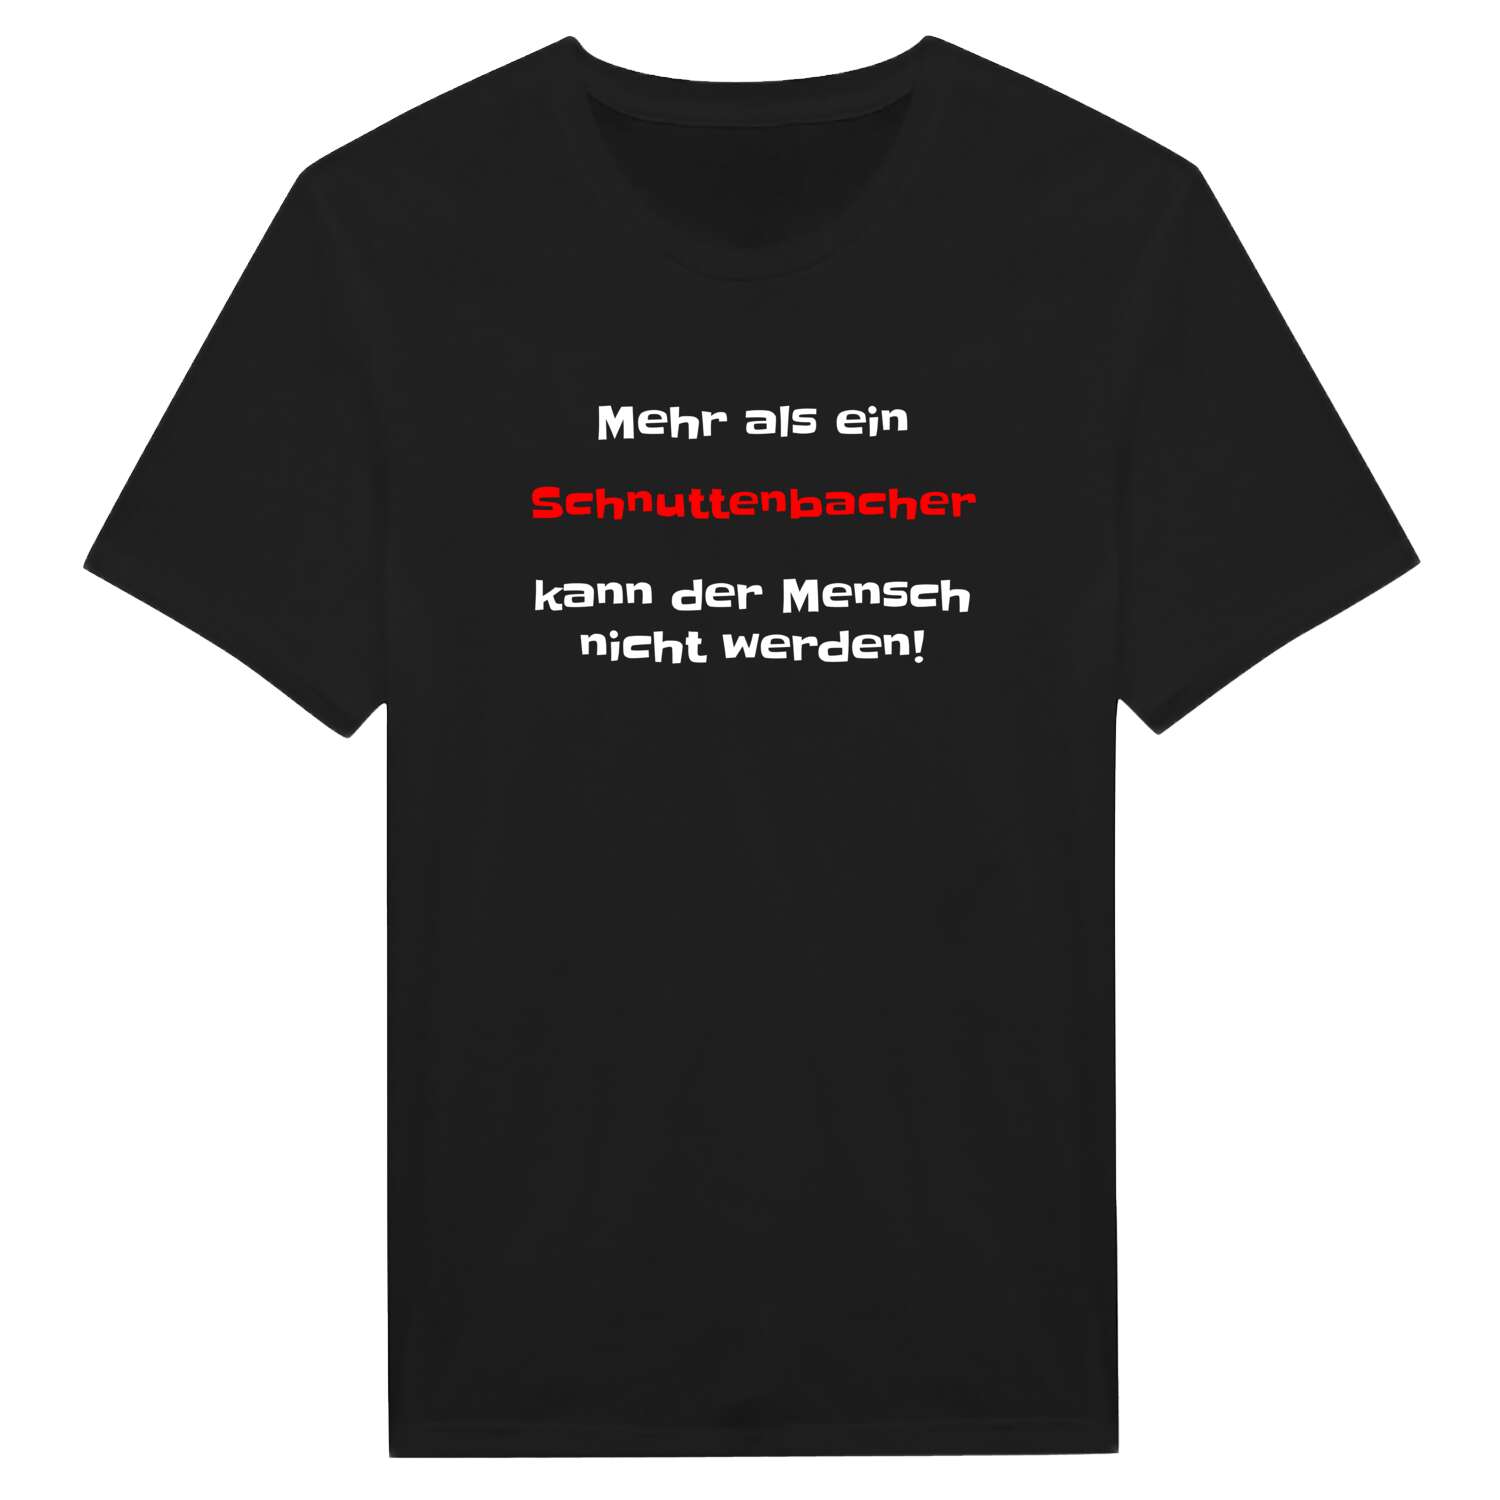 Schnuttenbach T-Shirt »Mehr als ein«